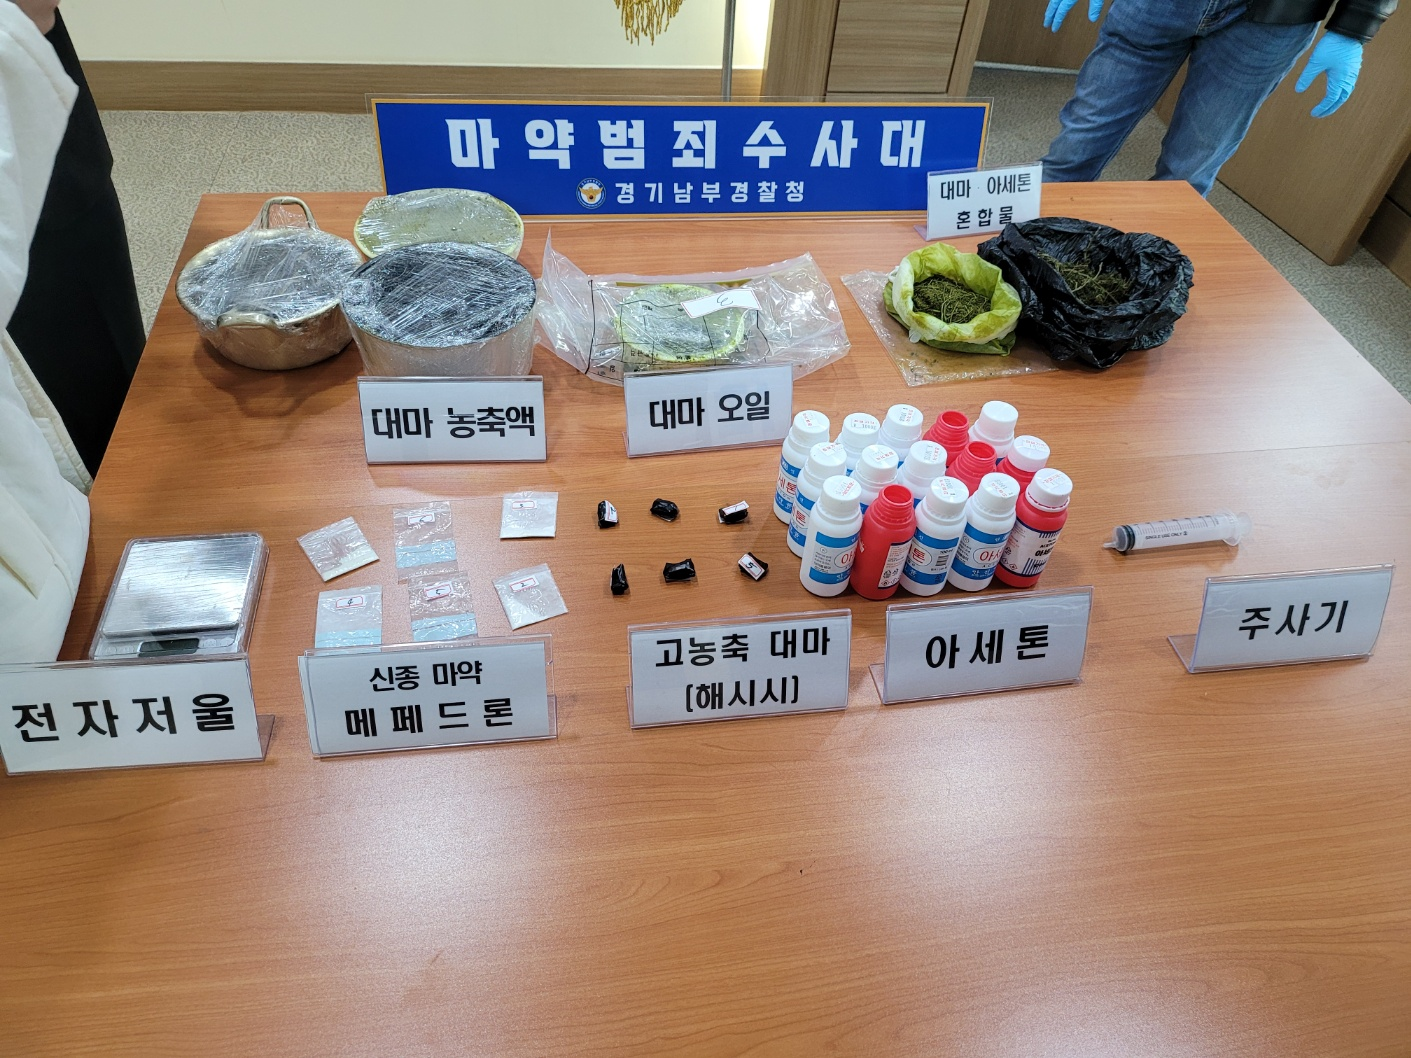 경기도 안산시의 한 주택가에서 마약류를 제조한 피의자들로부터 압수한 마약. 명종원 기자